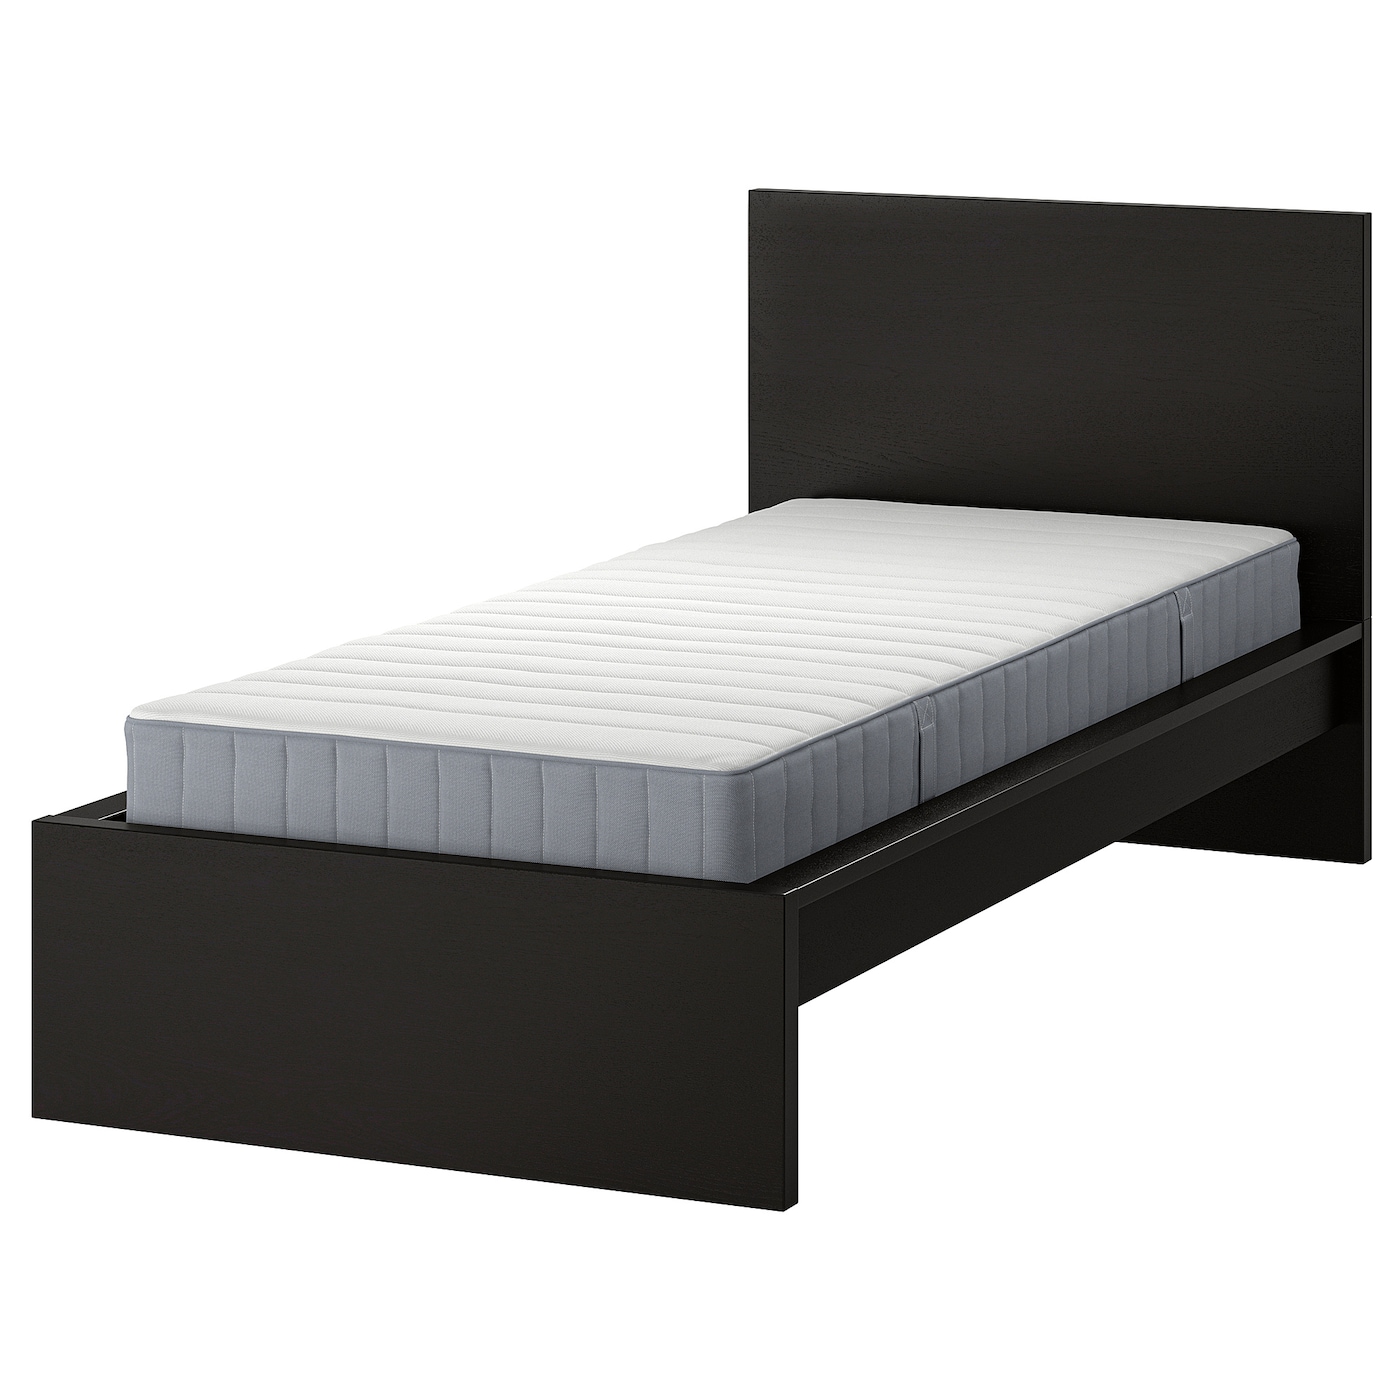 Кровать - IKEA MALM, 200х120 см, матрас жесткий, черный, МАЛЬМ ИКЕА